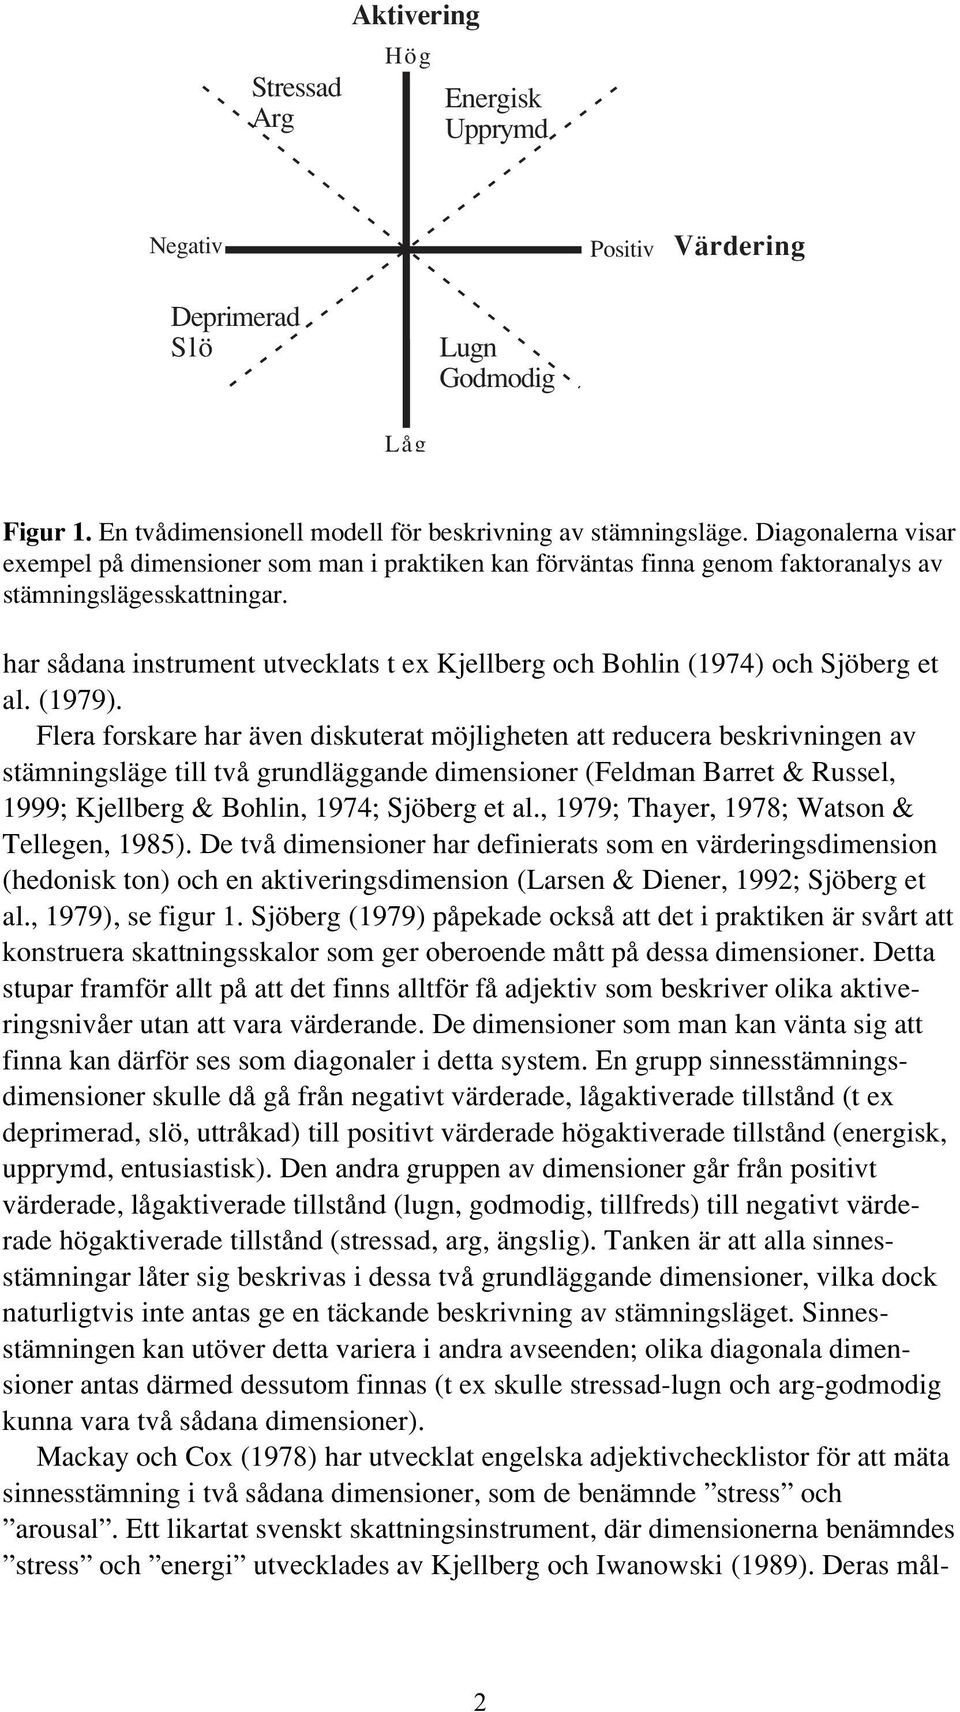 har sådana instrument utvecklats t ex Kjellberg och Bohlin (1974) och Sjöberg et al. (1979).